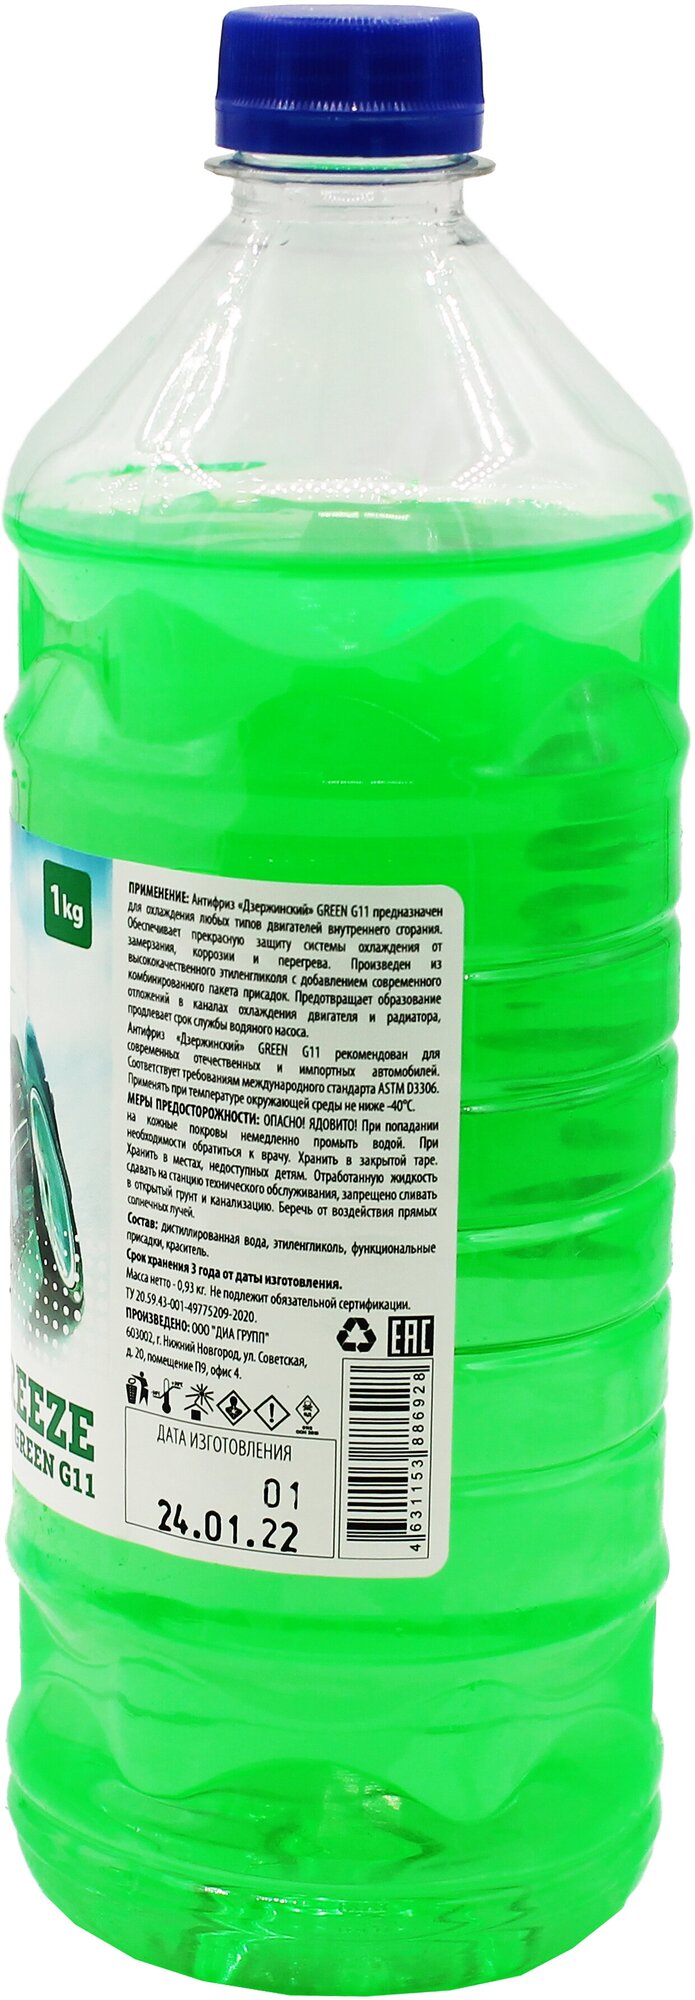 Жидкость охлаждающая "Антифриз" "Дзержинский ГОСТ" G11 (зеленый) 1 кг